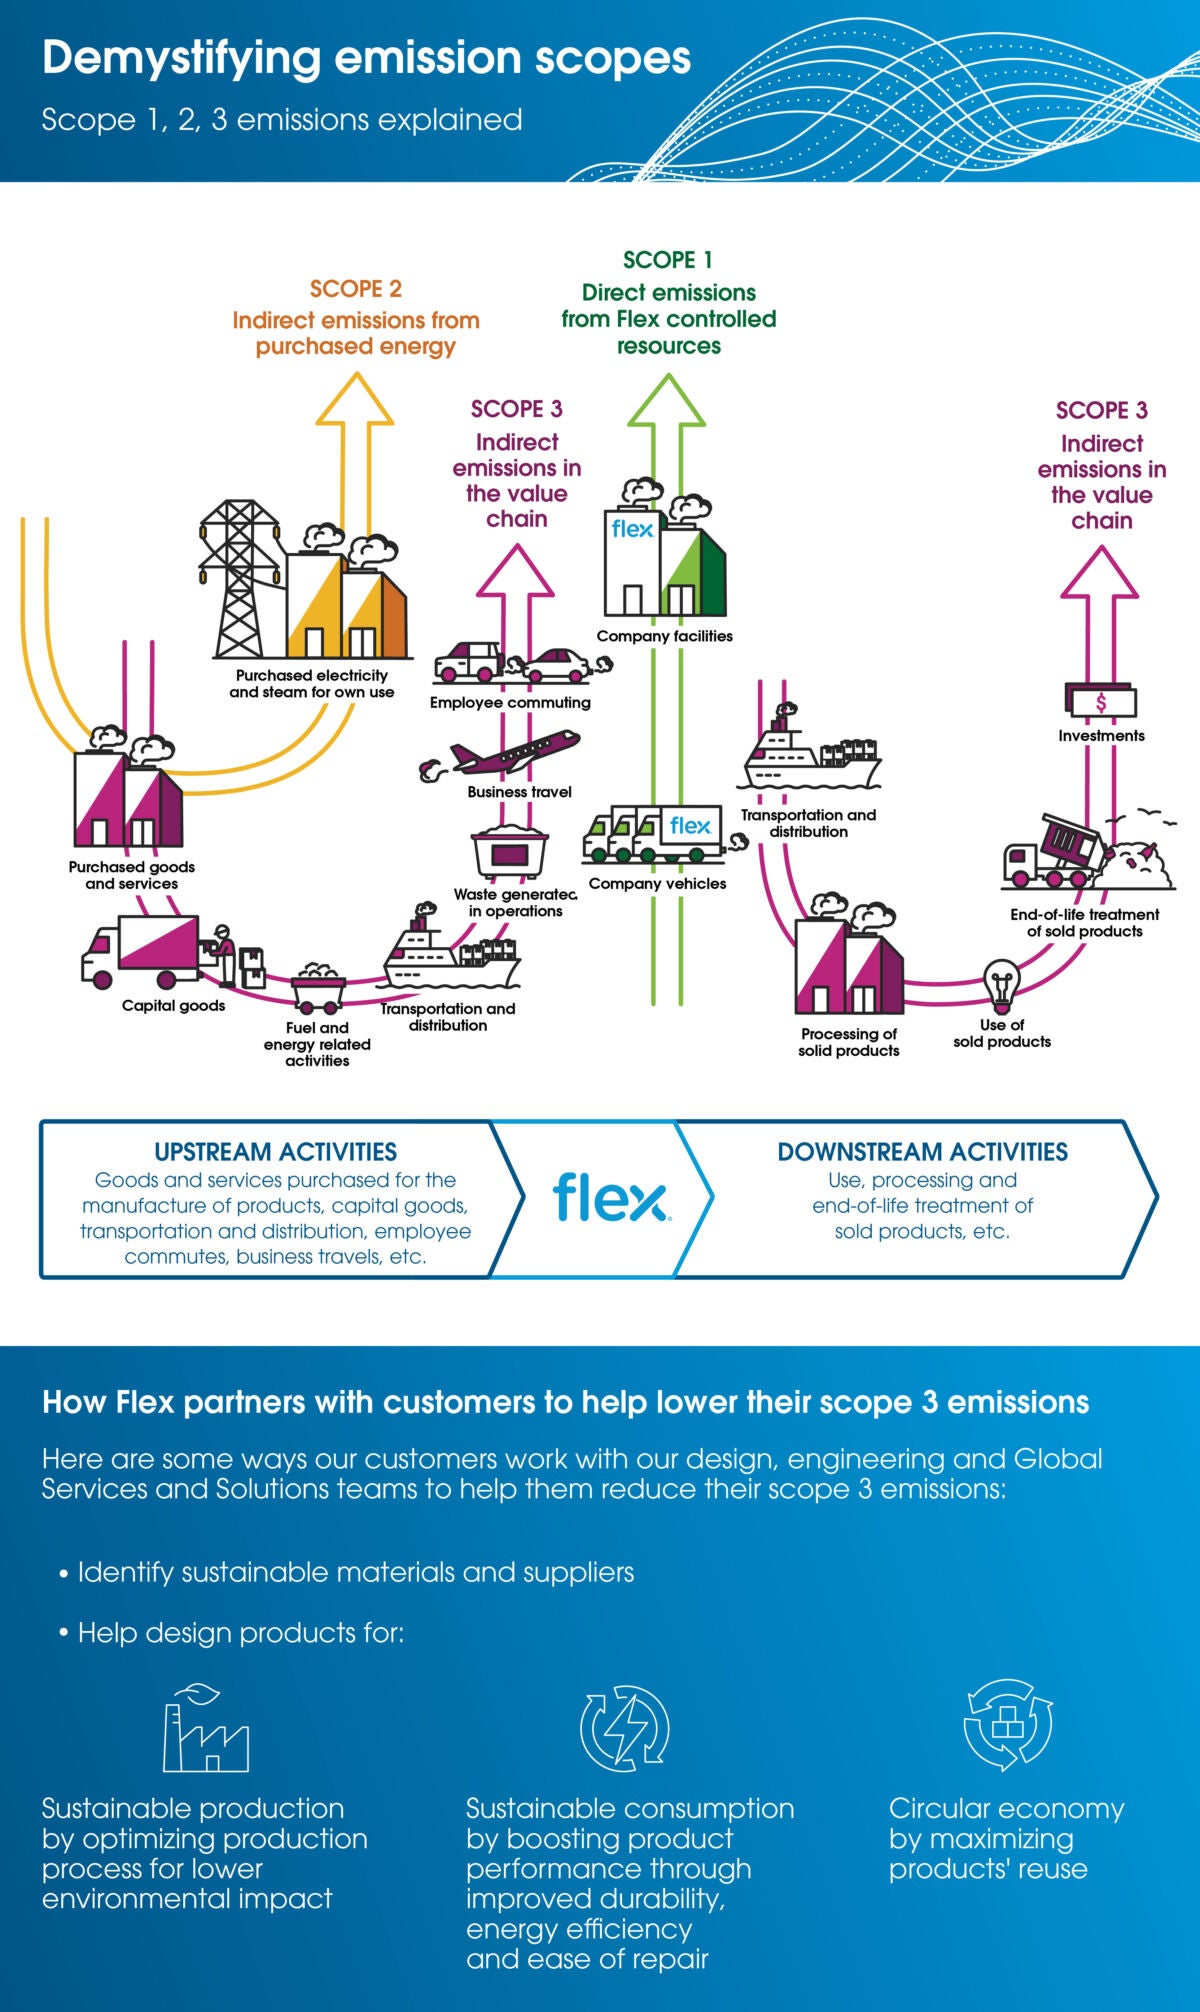 Flex Sustainability: Demystifying emission scopes 1, 2, and 3